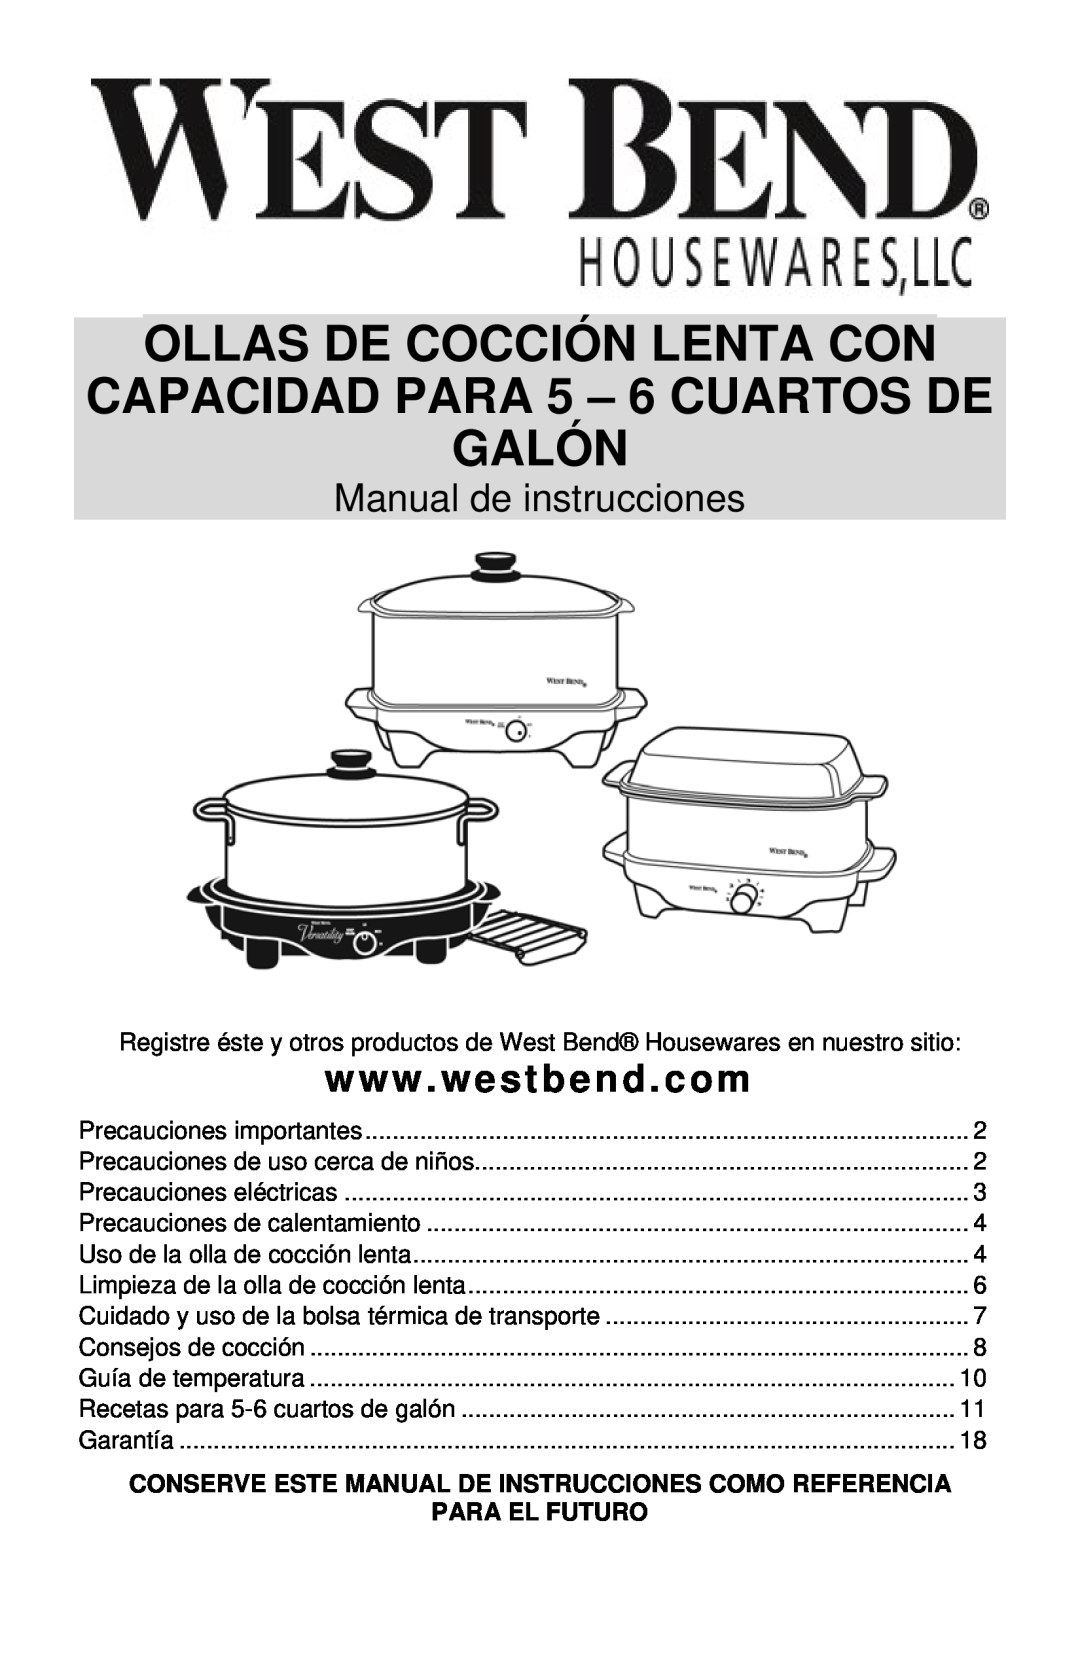 West Bend 5-6 QUART SLOW COOKERS Ollas De Cocción Lenta Con, CAPACIDAD PARA 5 - 6 CUARTOS DE GALÓN, Para El Futuro 